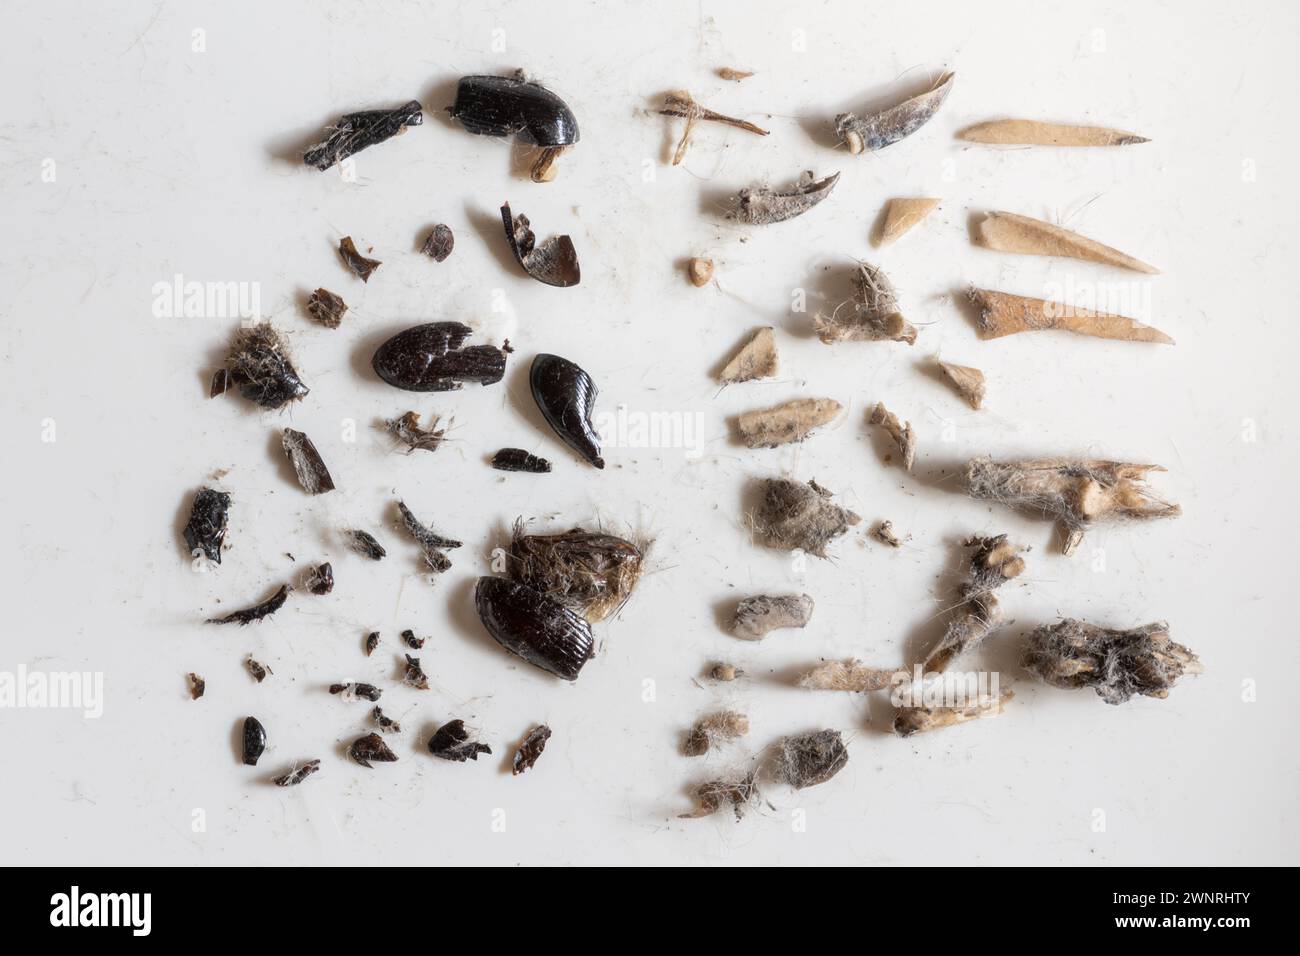 Pellet di gufo tawny dissezionato (Strix aluco) che mostrano il contenuto del pellet rigurgitato, tra cui ossa di piccoli mammiferi, denti ed esoscheletro di coleottero, Regno Unito Foto Stock